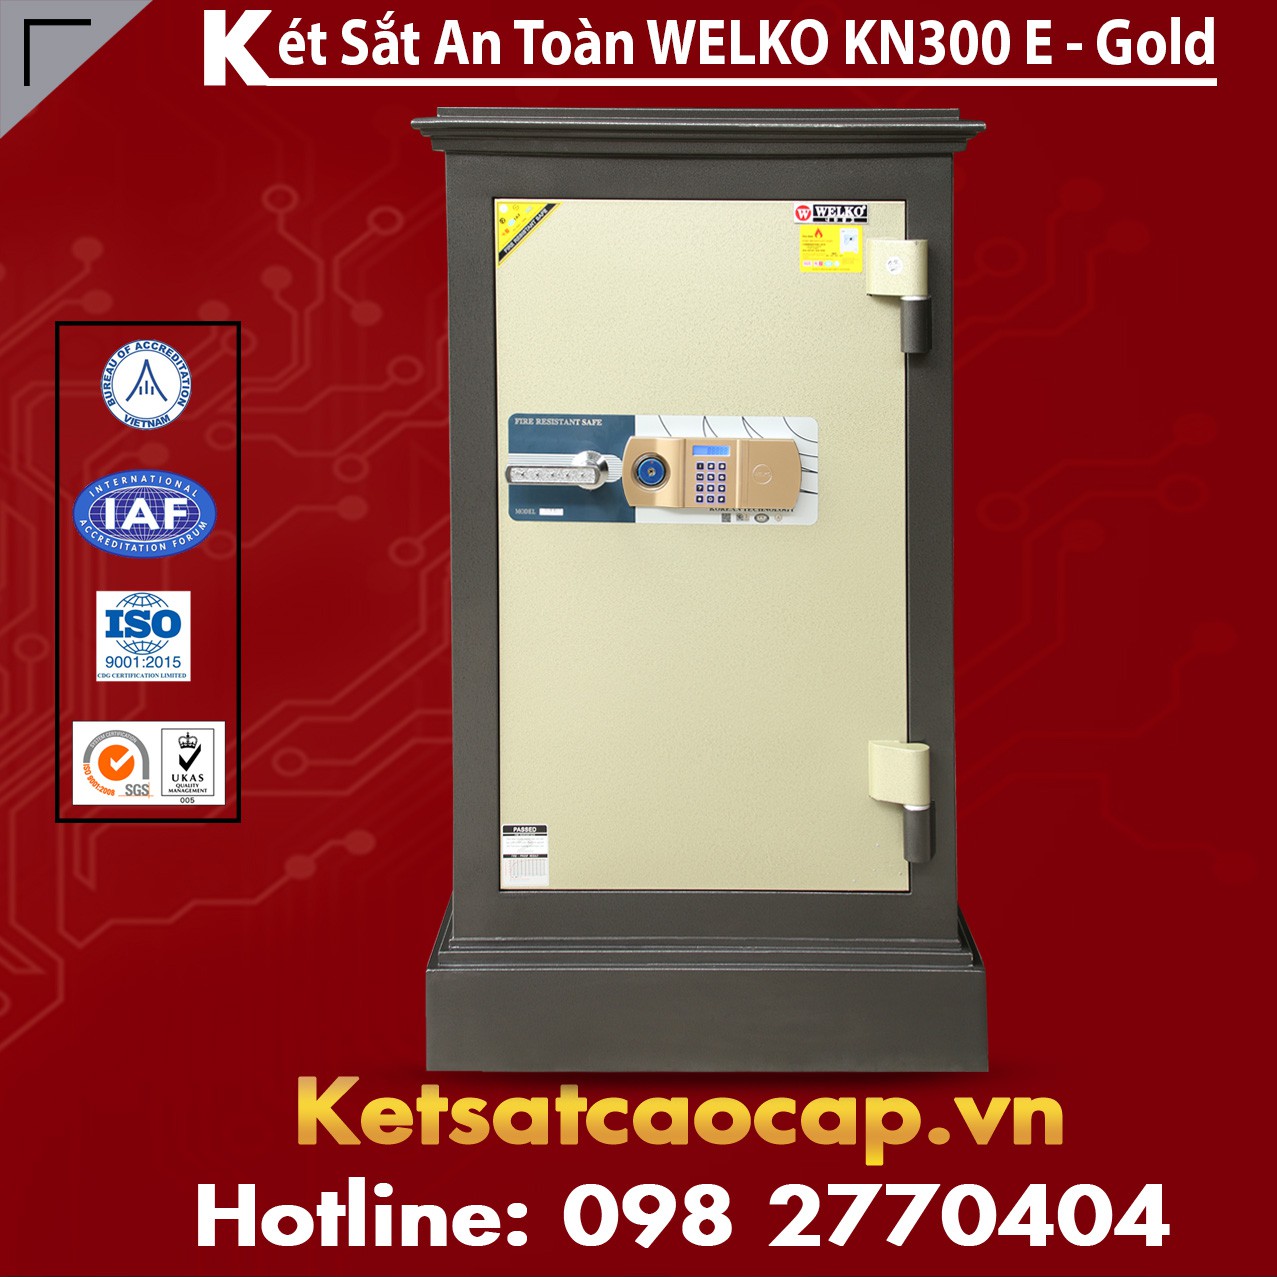 Két Bạc Văn Phòng WELKO KN300 E Gold